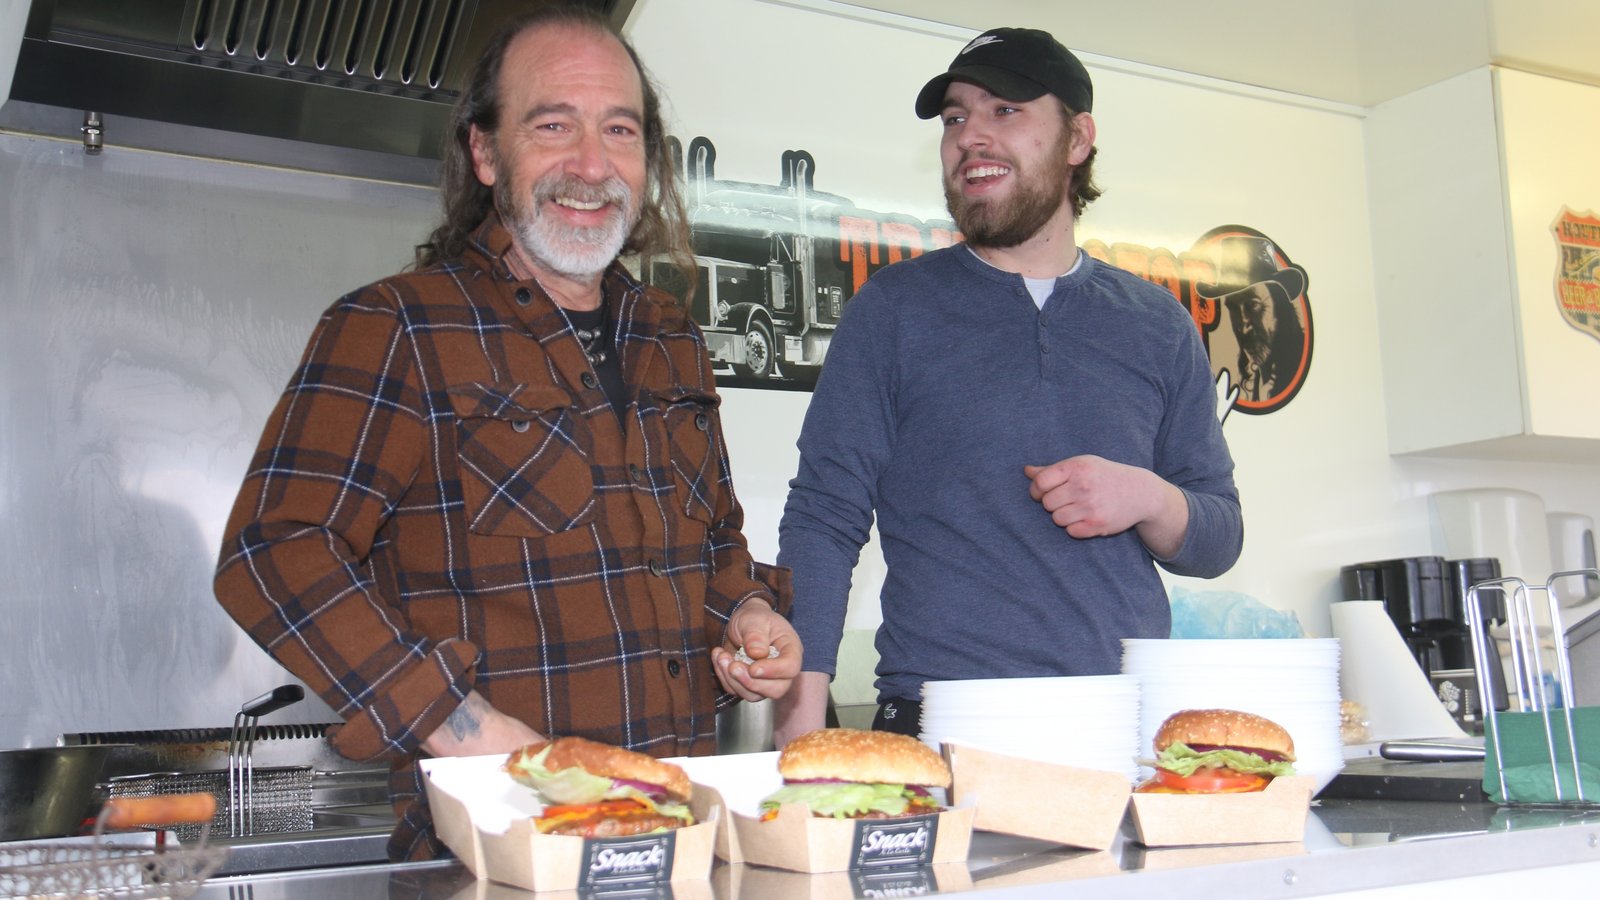 Ein gutes Gespann: Vater Mark Babbitt und Sohn Aiden mit drei Hamburgern, die ein Kunde mitnimmt.  Fotos: Rücker